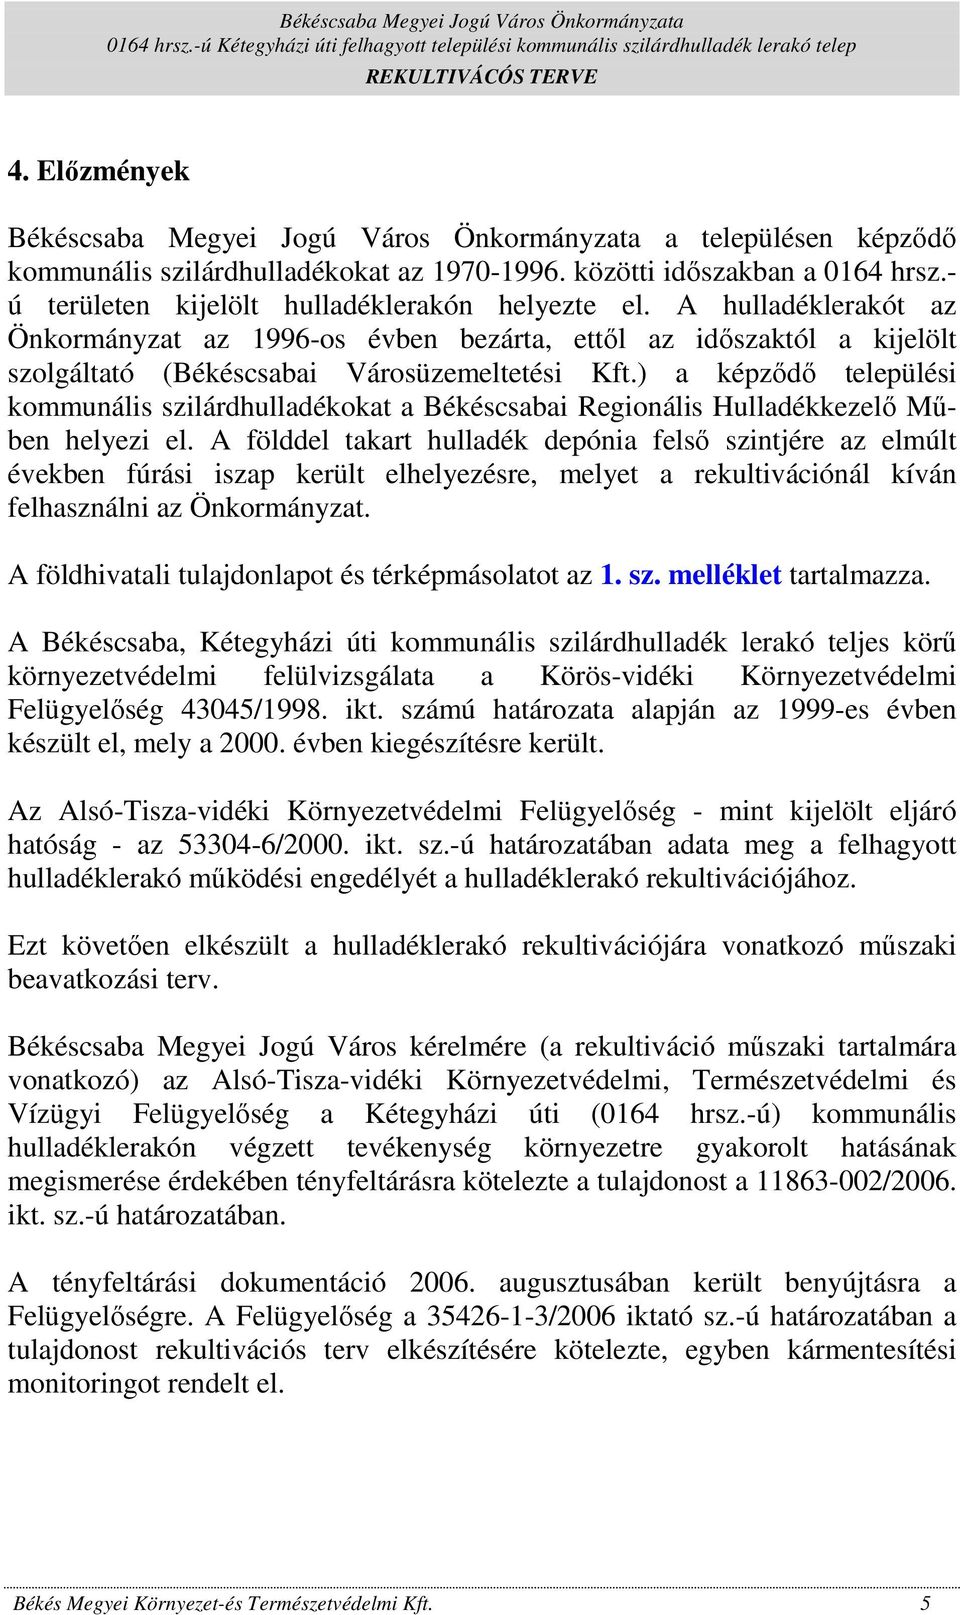 ) a képzıdı települési kommunális szilárdhulladékokat a Békéscsabai Regionális Hulladékkezelı Mőben helyezi el.